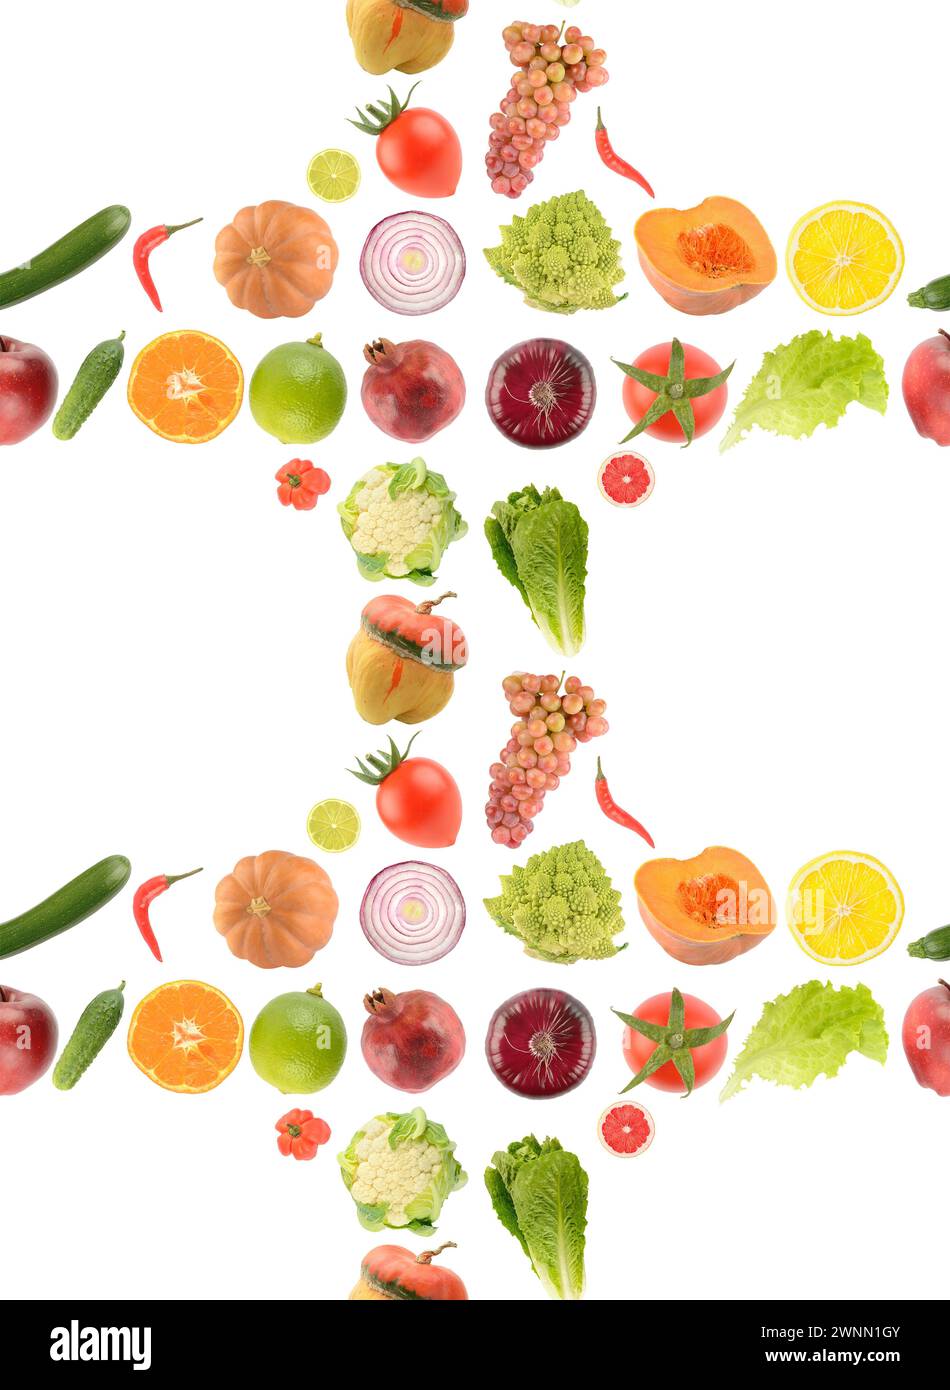 Motif homogène de légumes, fruits et baies isolé sur fond blanc. Banque D'Images